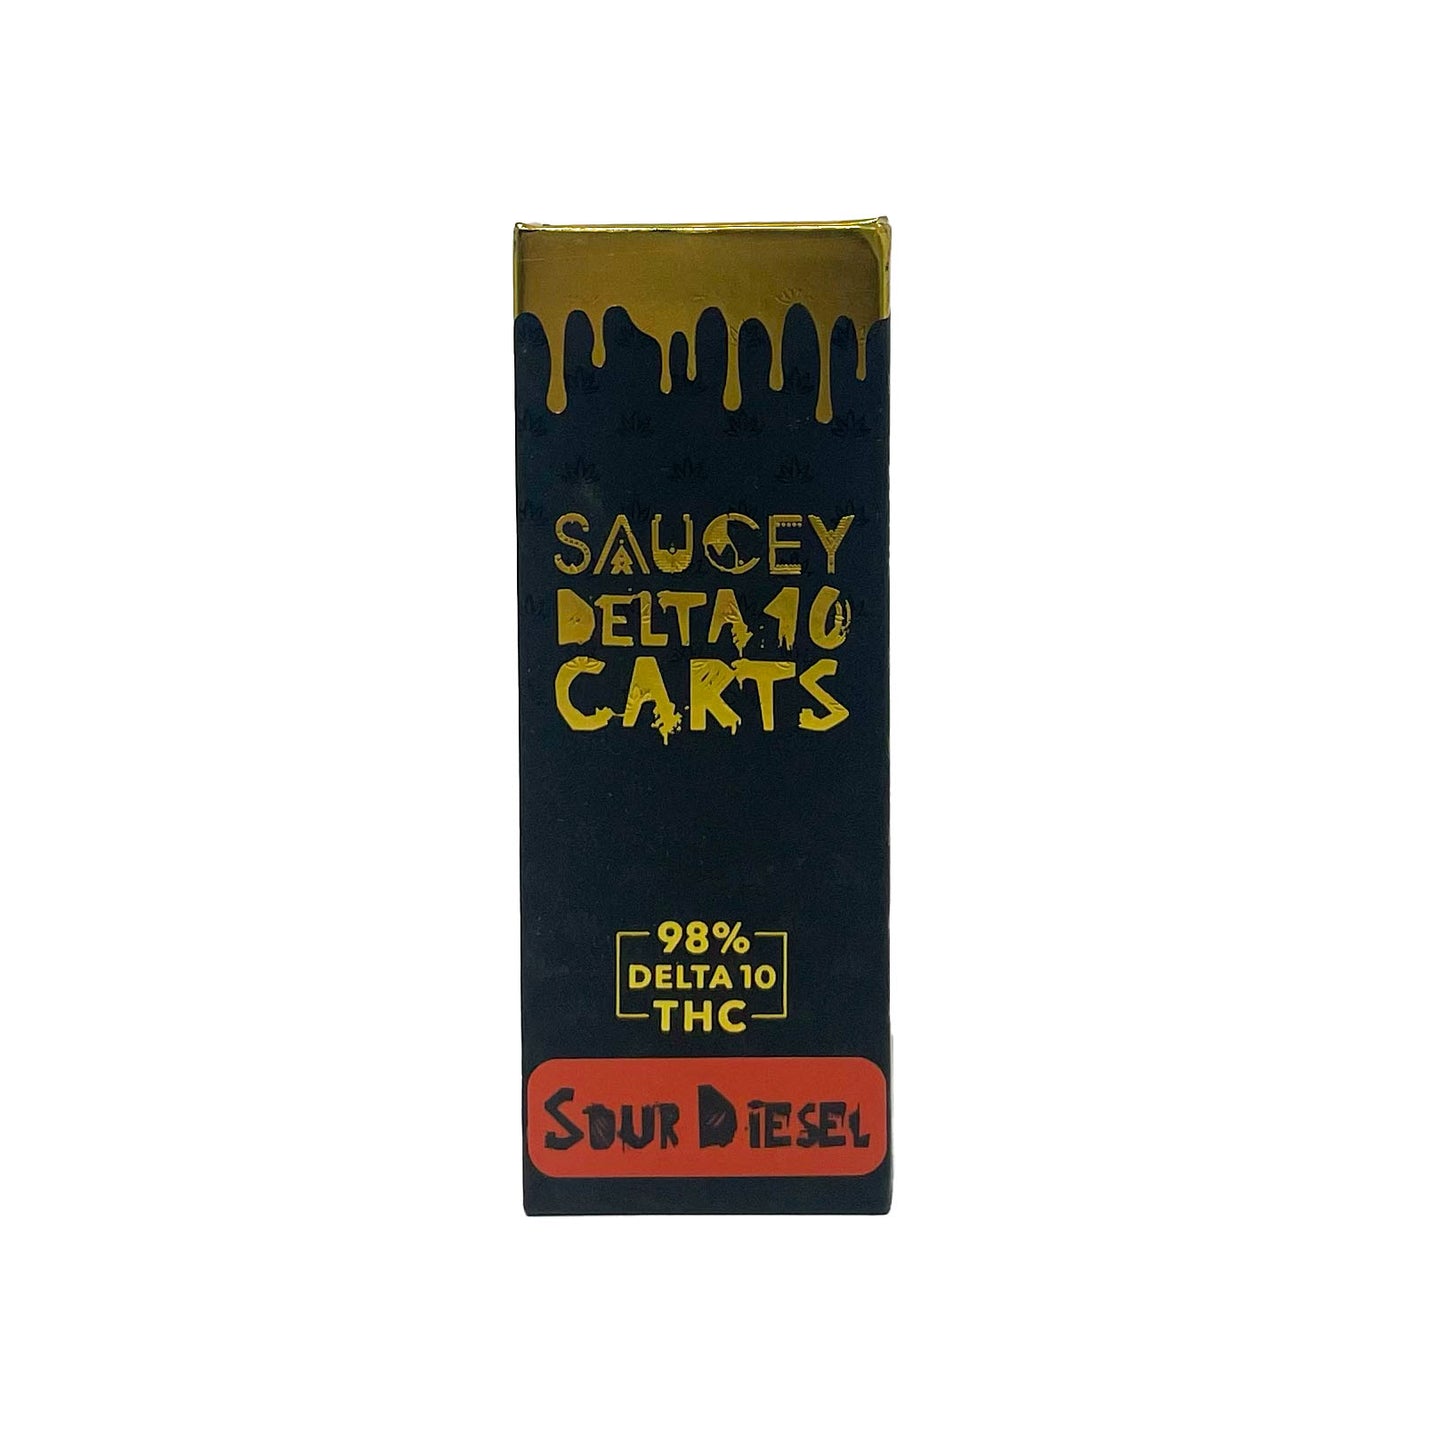 Saucey Delta 10 Carts